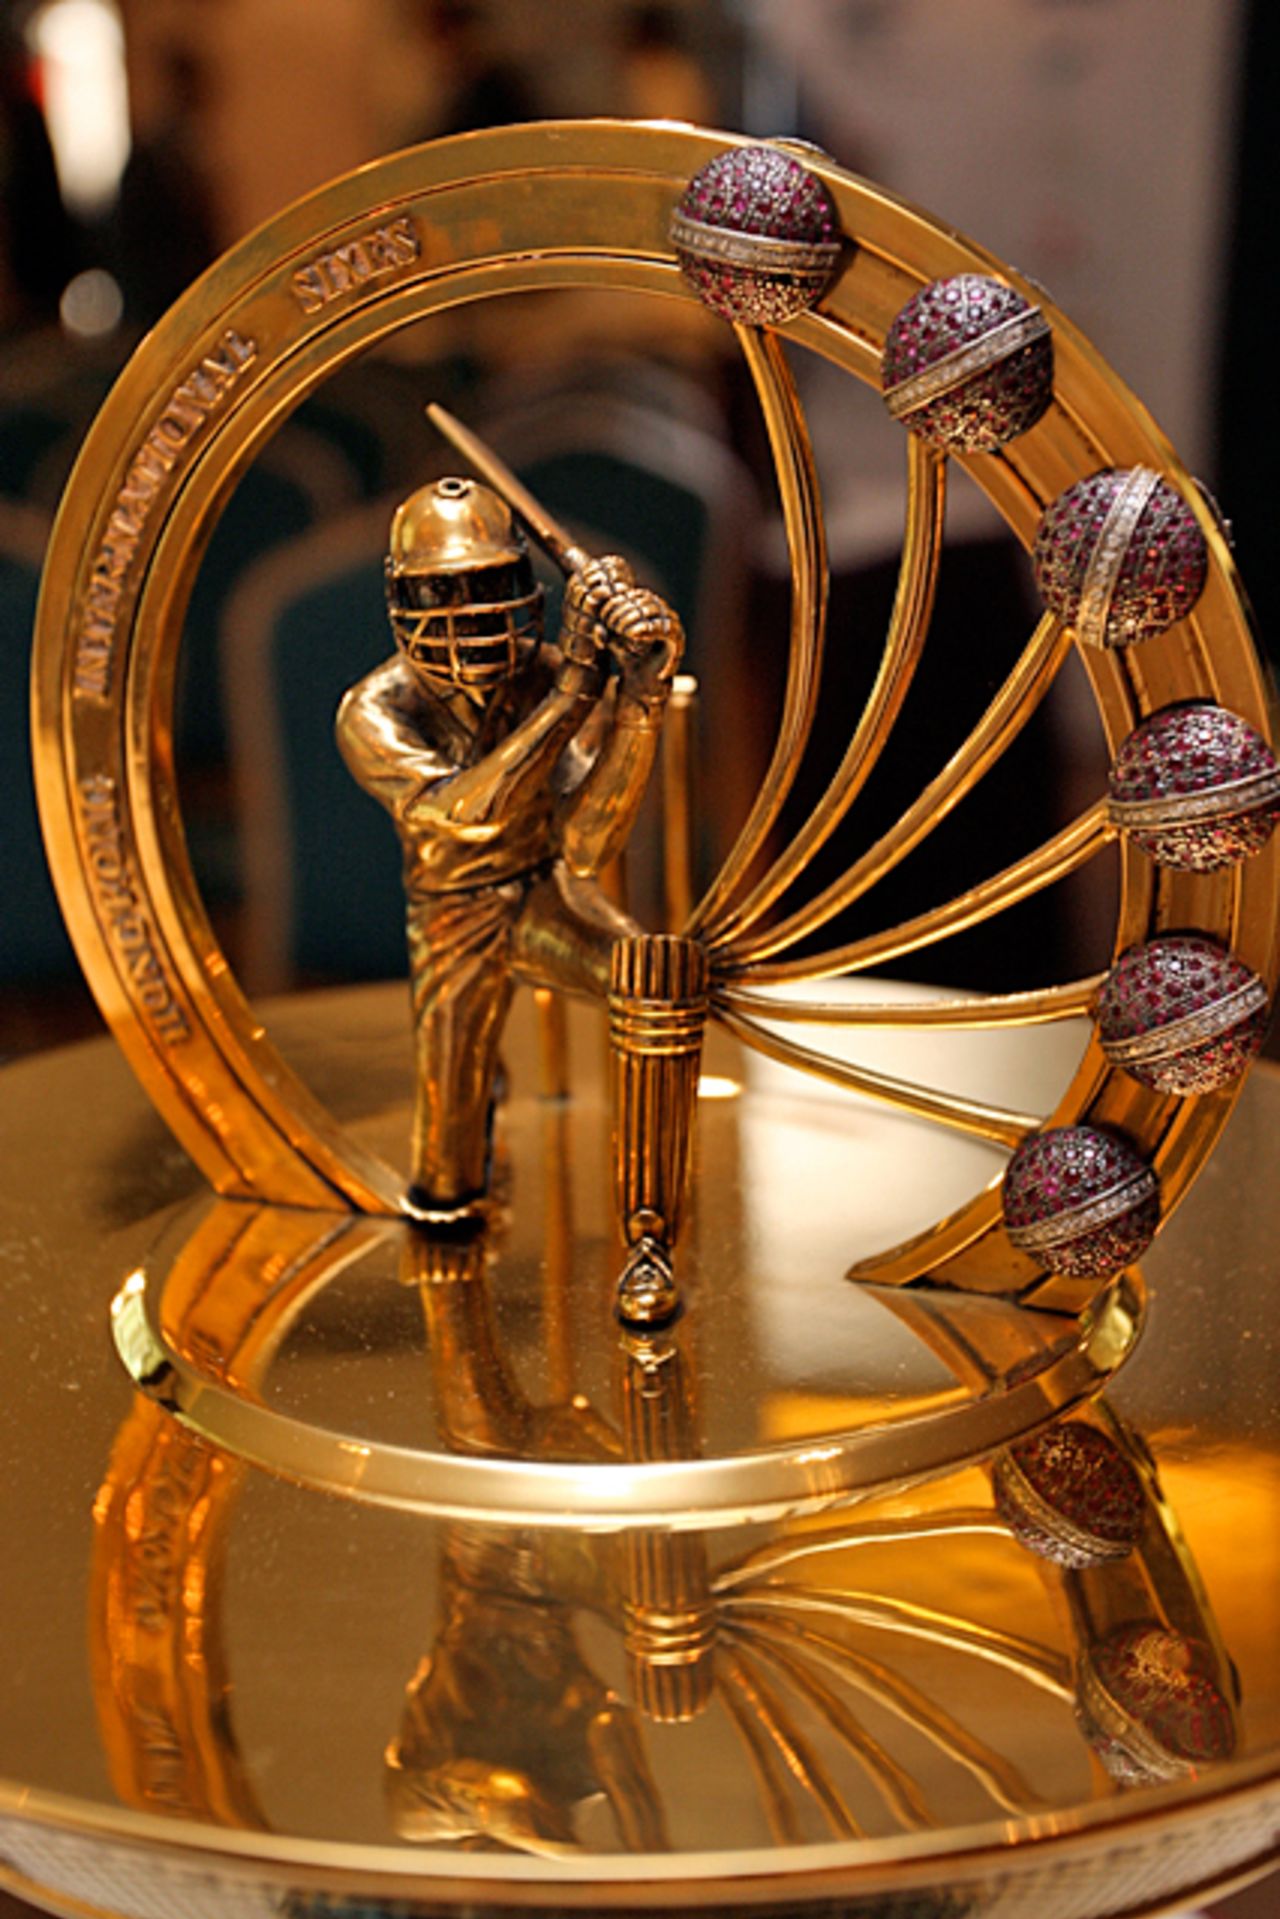 A golden batsman and six jewel encrusted cricket balls adorn the top of the Butani Cup